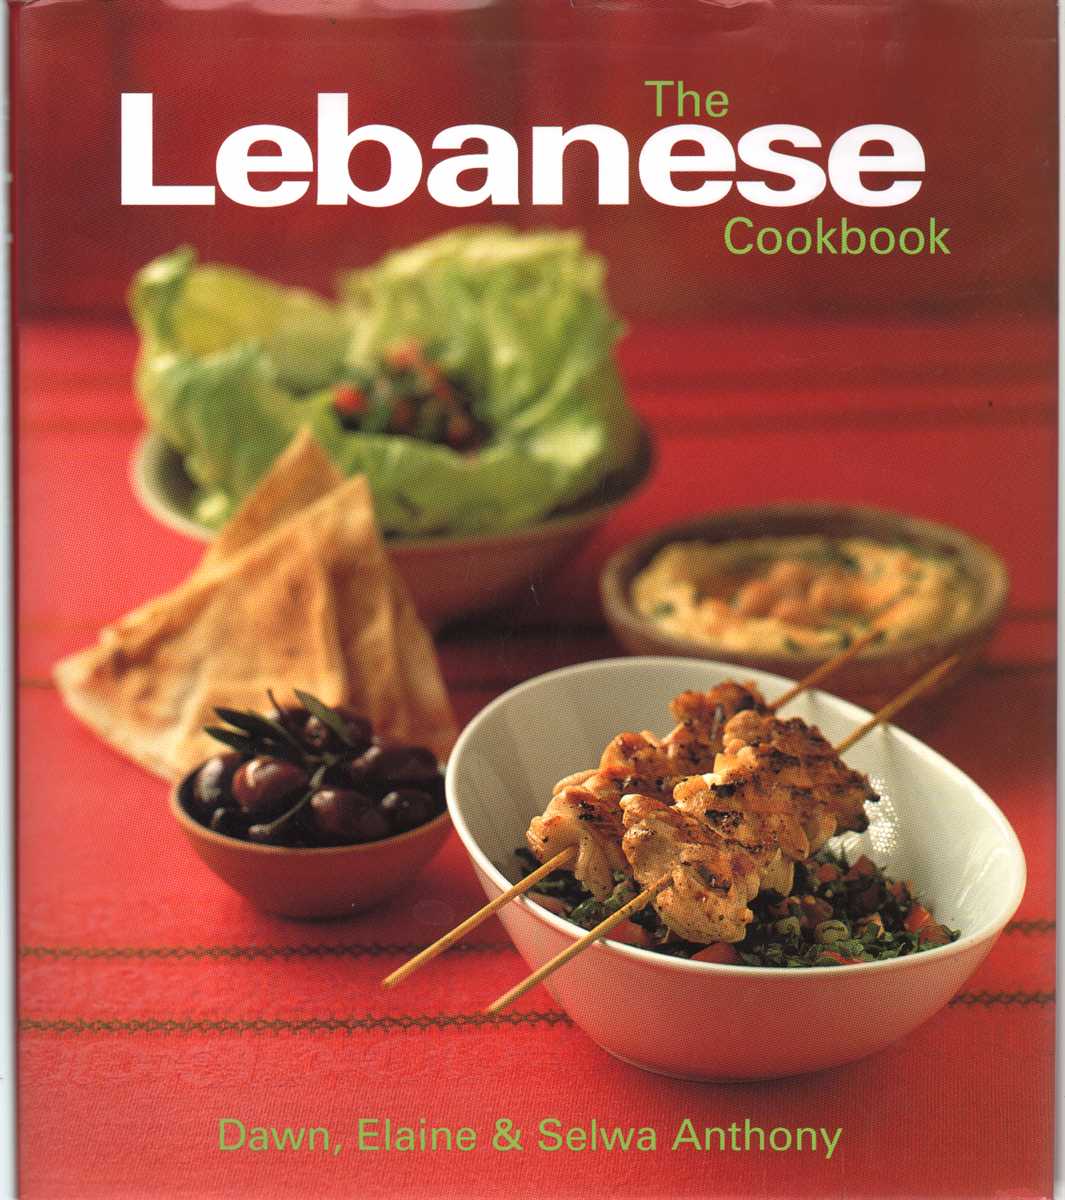 Dawn, Elain & Selwa Anthony - THE LEBANESE COOKBOOK